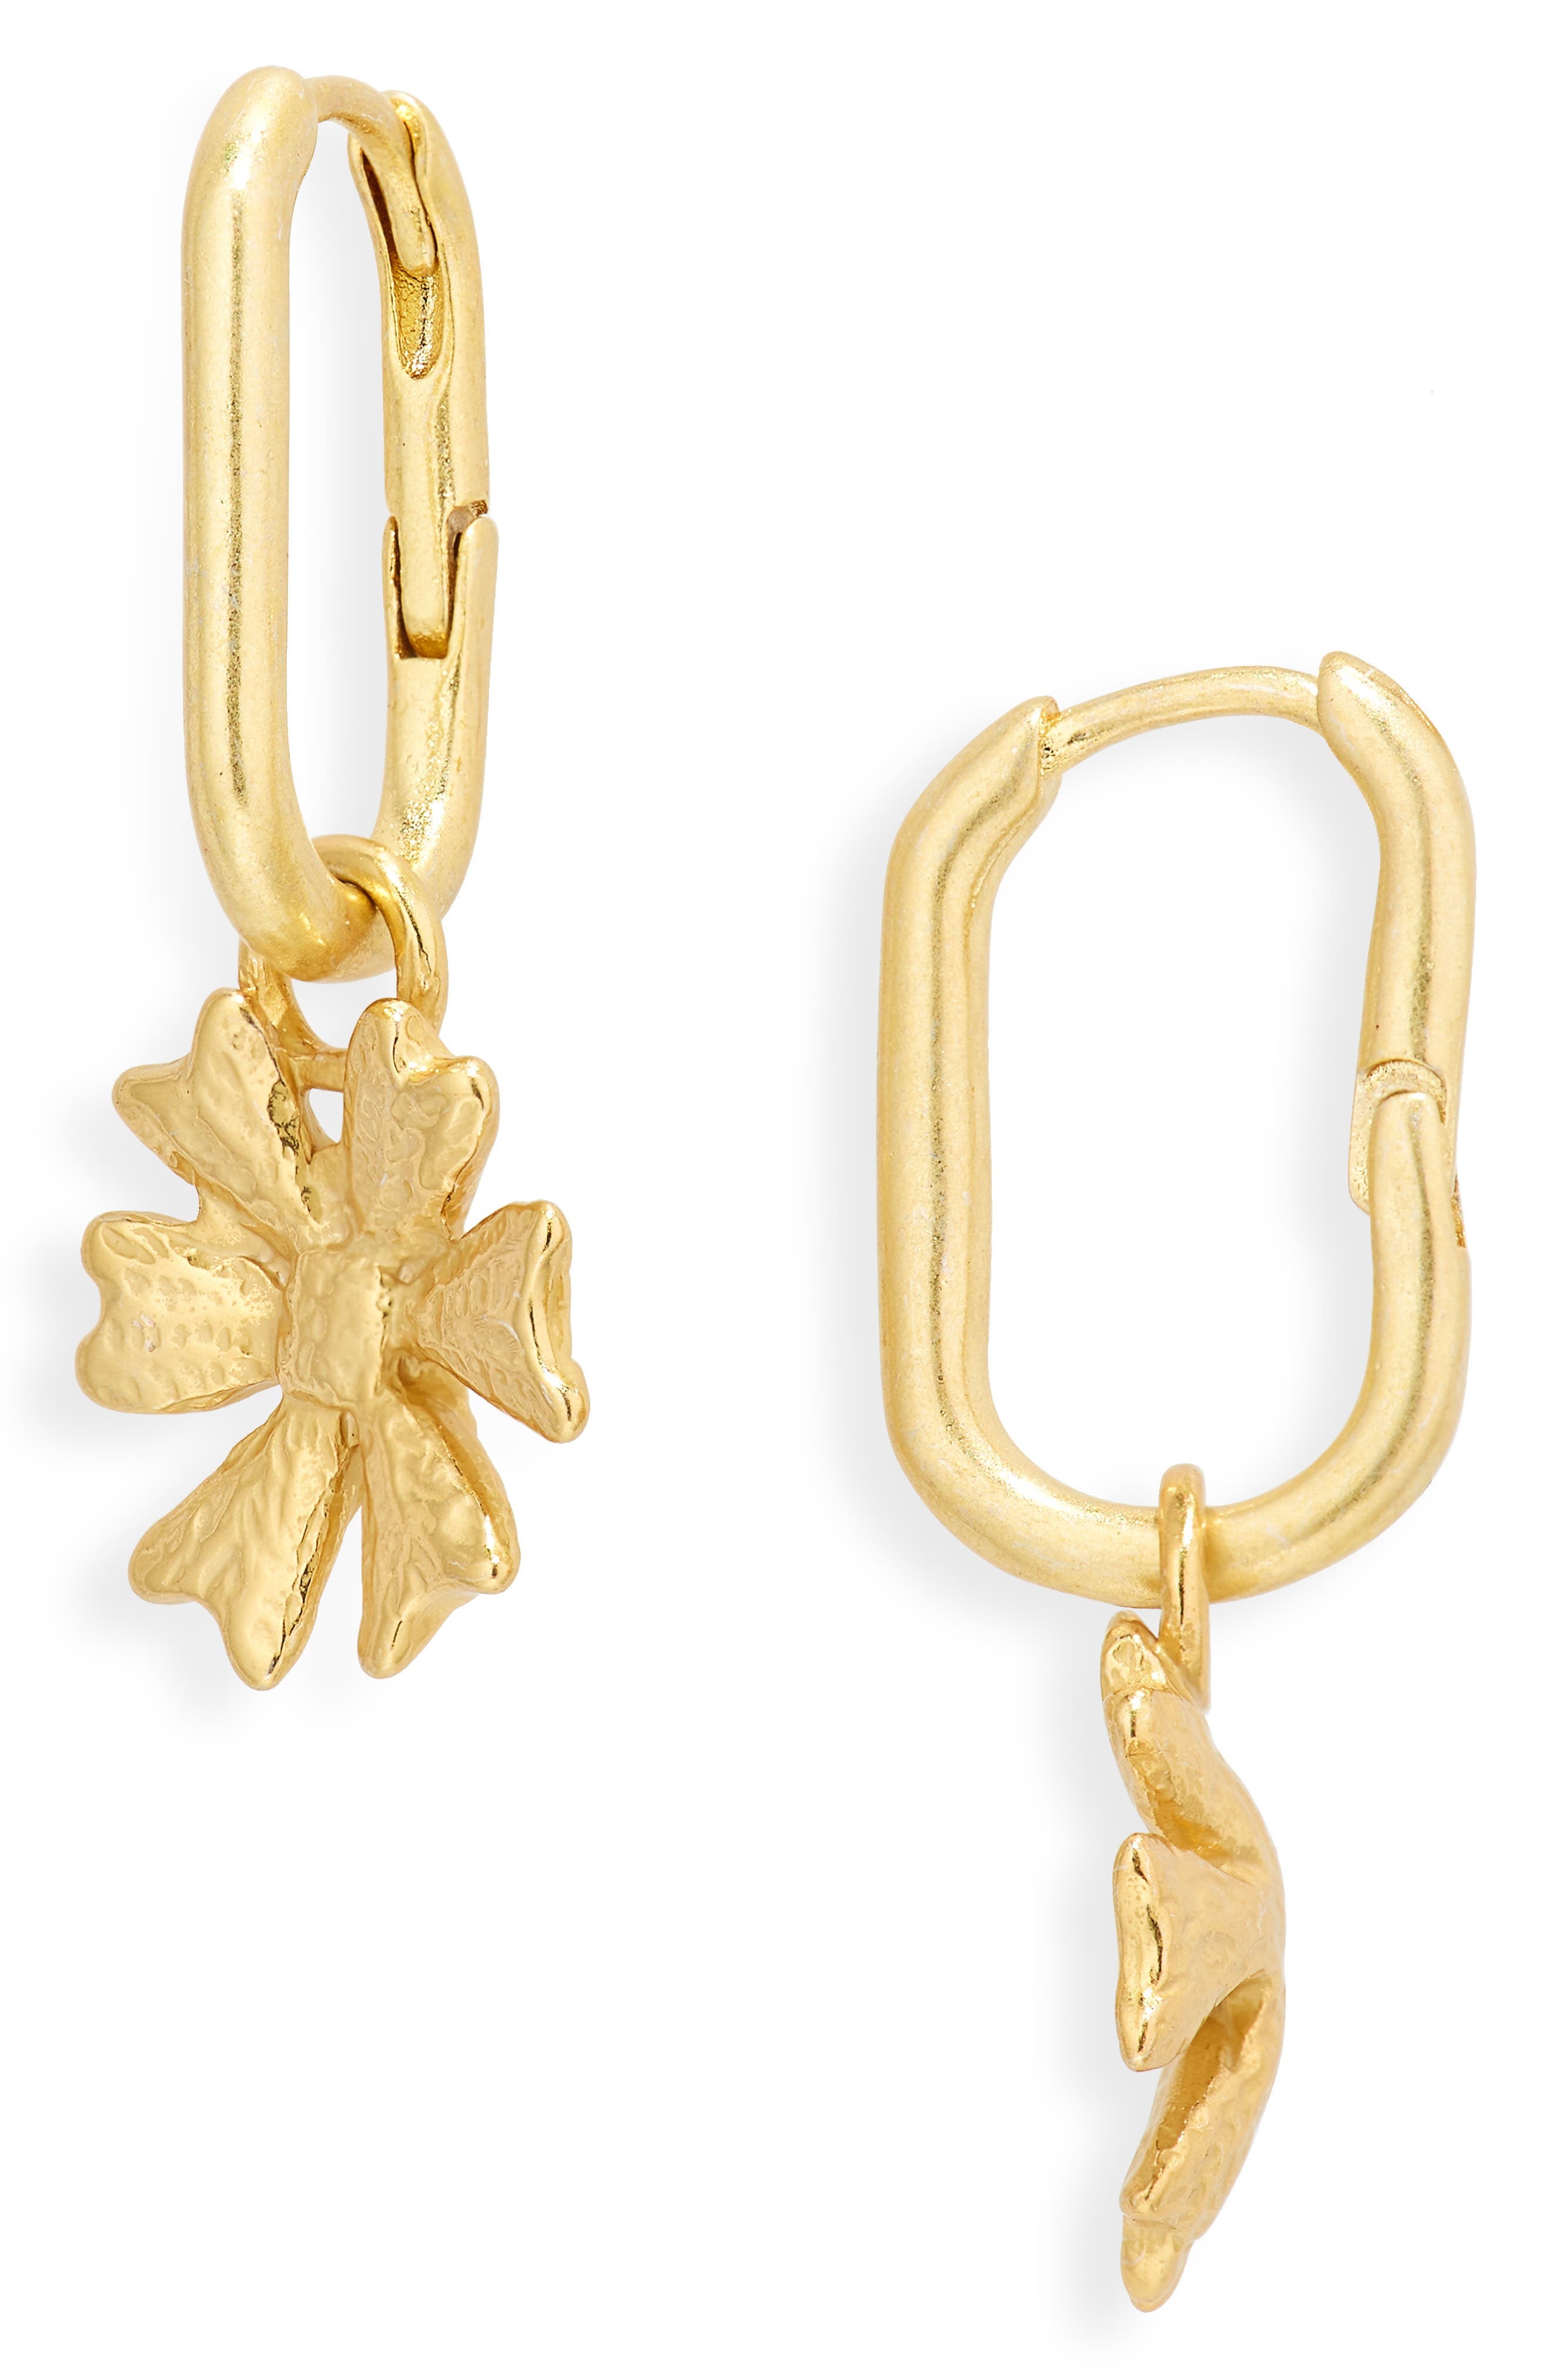 gift for her Oc\u00e9ane earrings horned shell earrings gold earrings delicate earrings dainty earrings handmade earrings